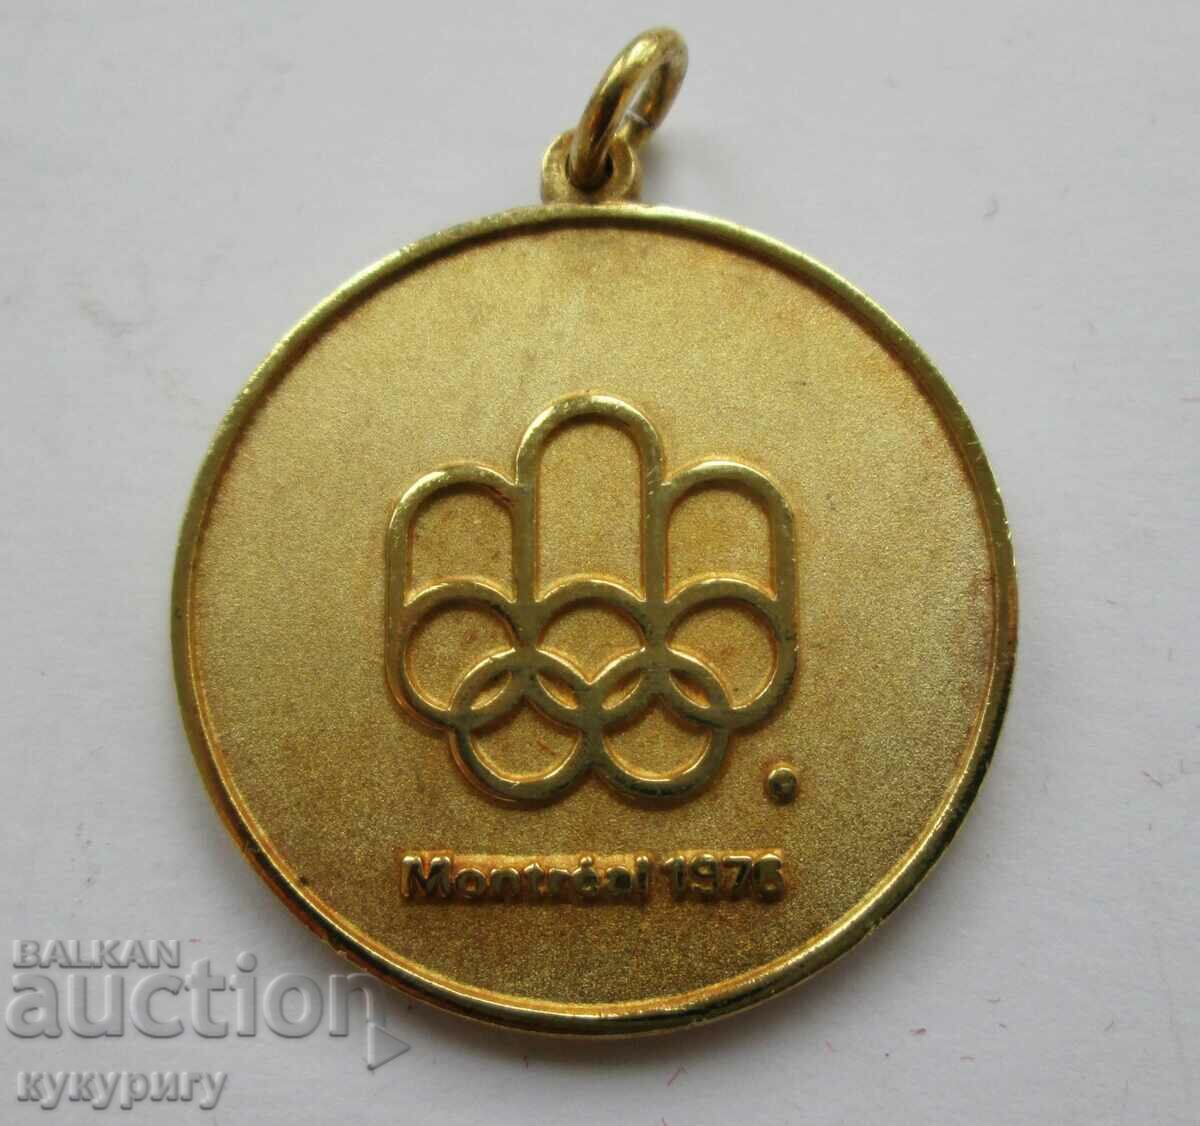 Παλιά Ολυμπιάδα μετάλλιο Ολυμπιάδα Μόντρεαλ 76